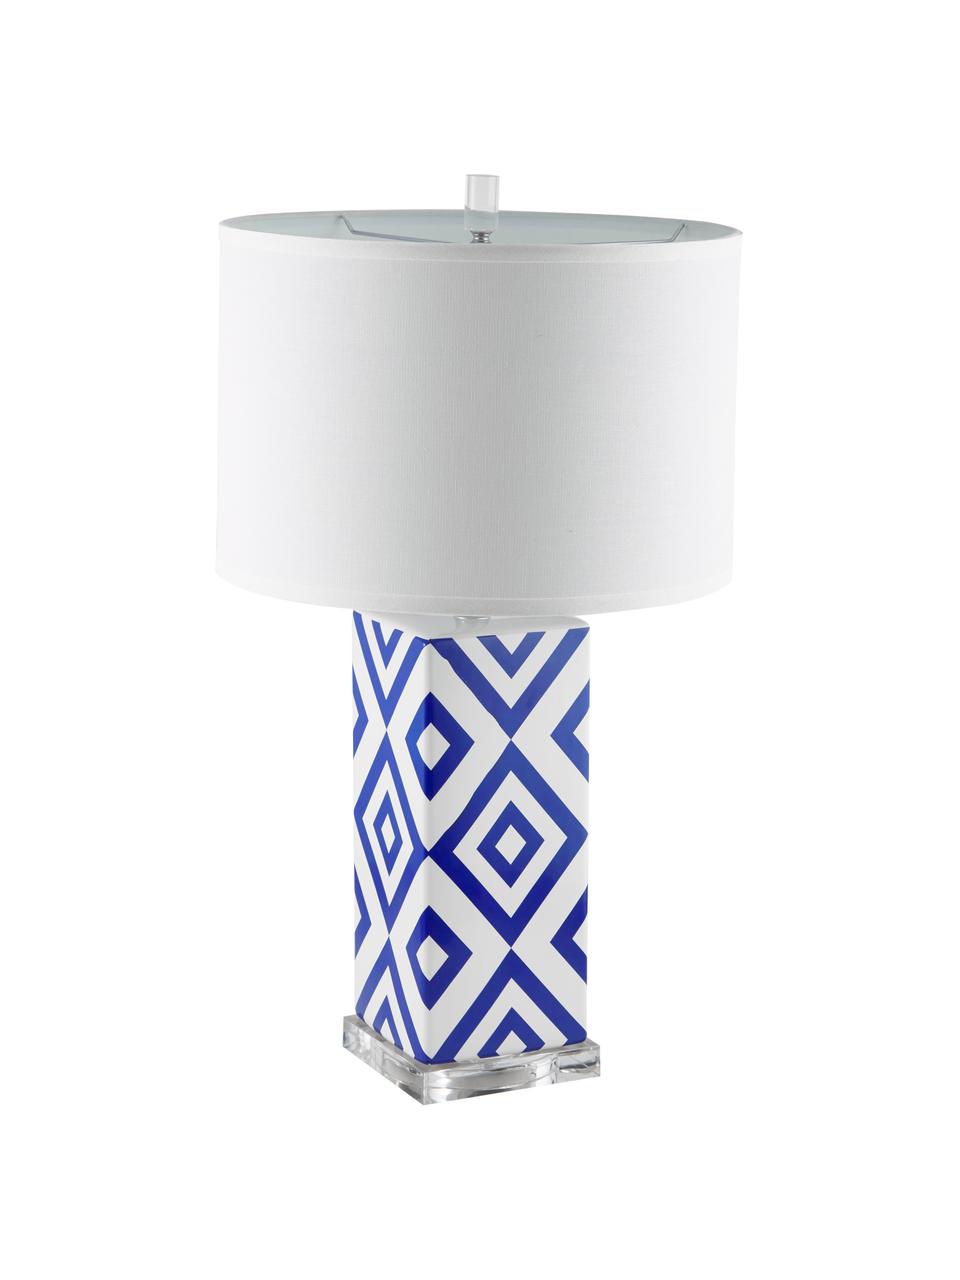 Große Tischlampen Patricia, 2 Stück, Lampenschirm: Textil, Lampenfuß: Keramik, Acryl, Blau, Weiß, Ø 38 x H 69 cm